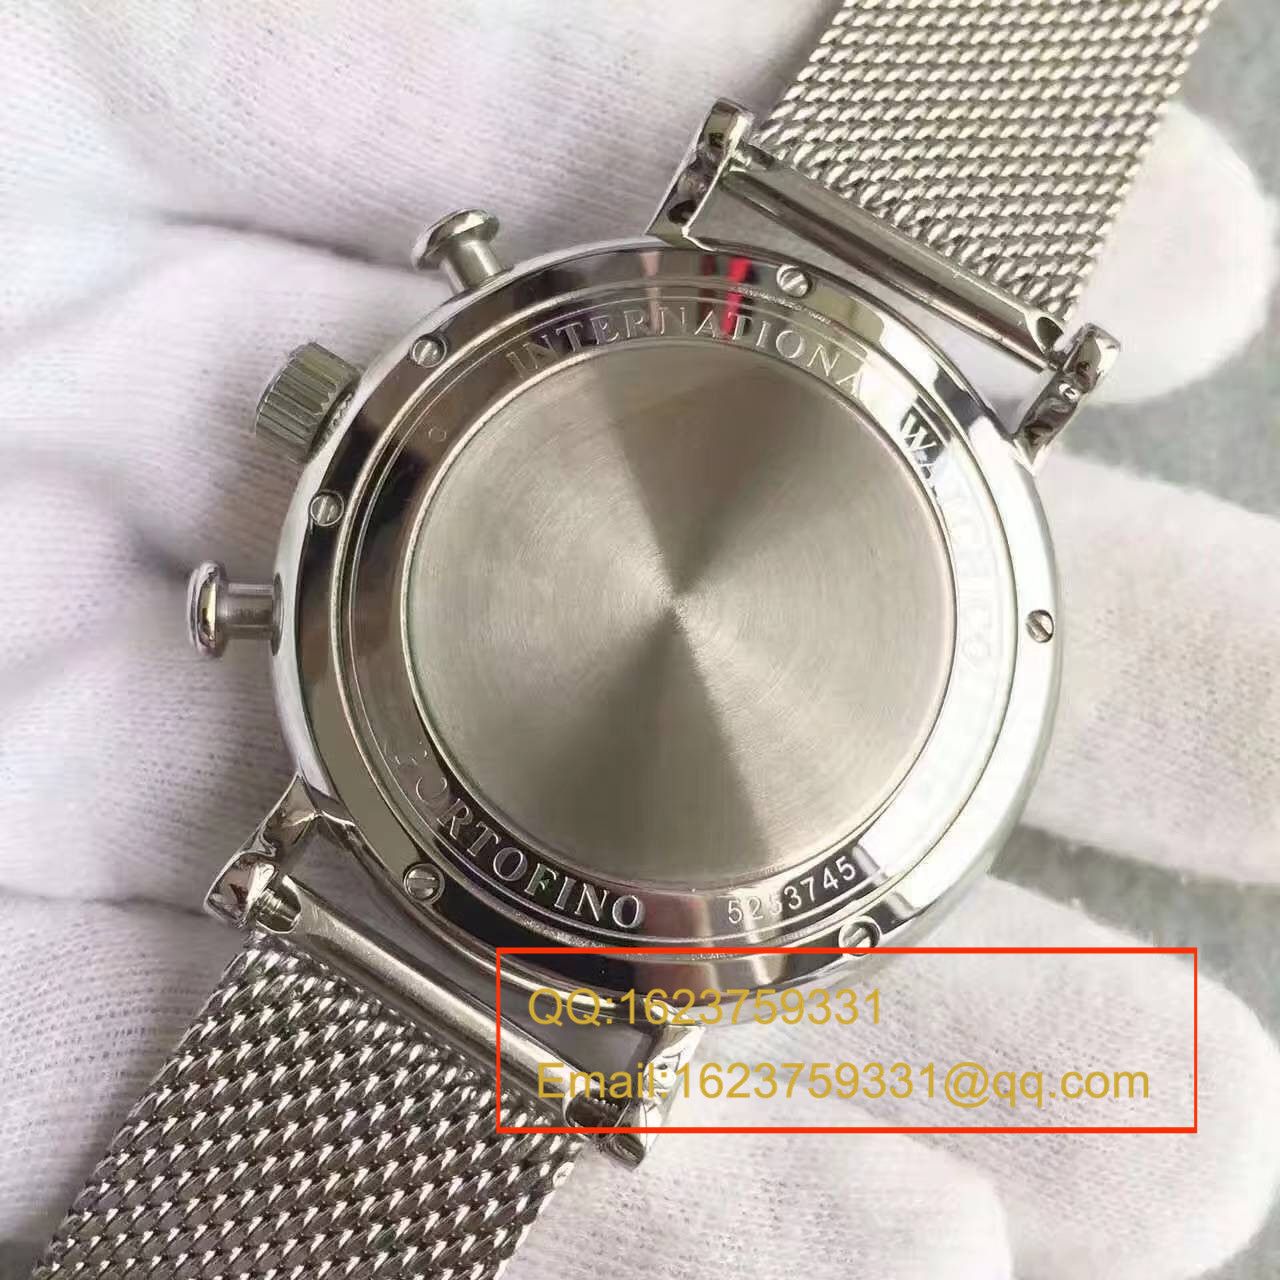 【MK一比一超A精仿手表】万国柏涛菲诺计时腕表系列 IW391010 男士手表 